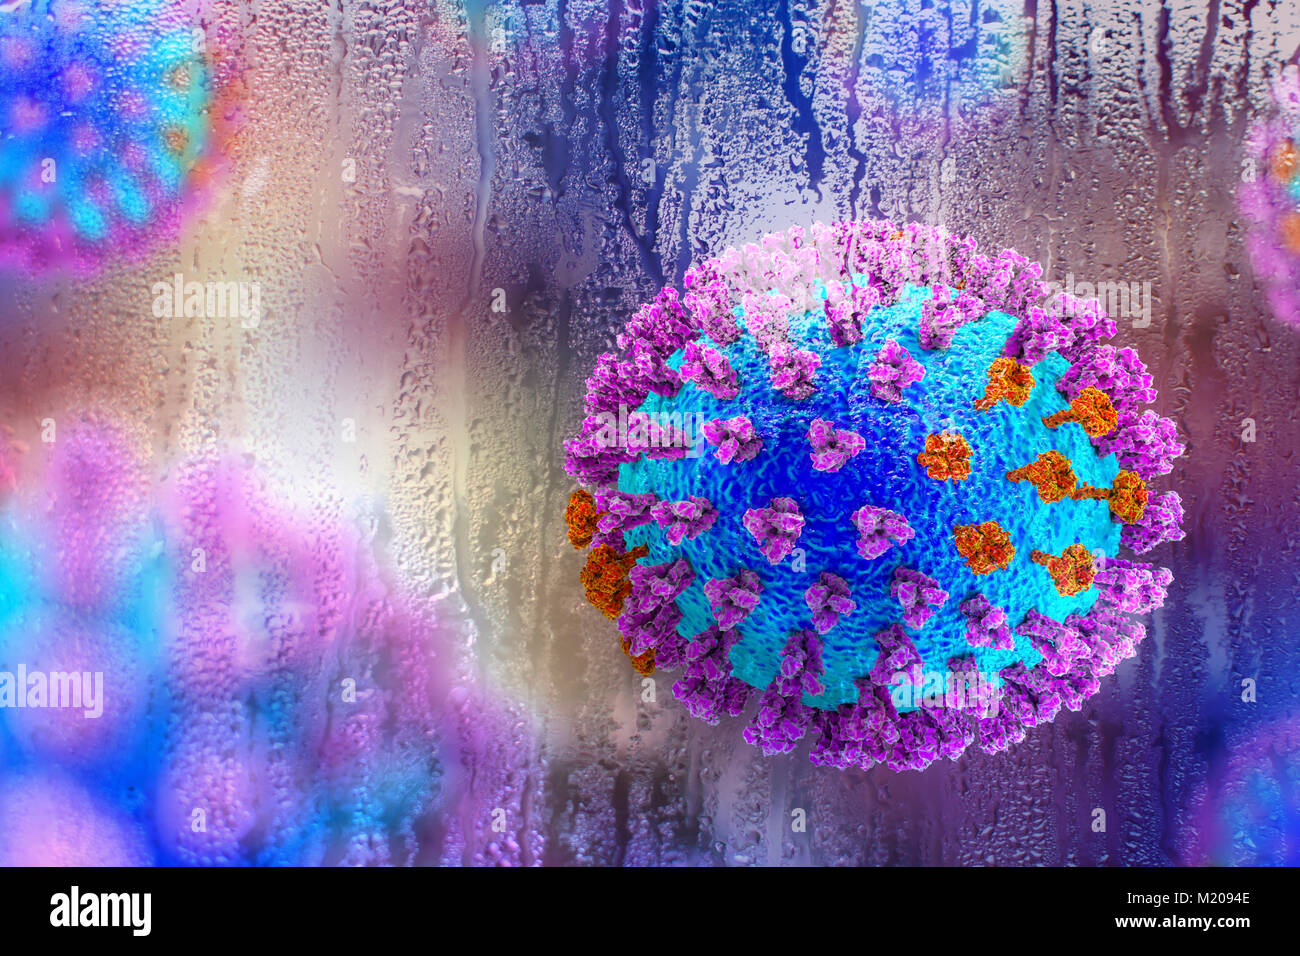 Les virus de la grippe,illustration conceptuelle démontrant le caractère saisonnier des infections respiratoires avec augmentation de l'incidence de la grippe en temps de pluie froide.Chaque virus est constitué d'un noyau d'ARN (acide ribonucléique) le matériel génétique entouré par une couche de protéines (bleu).intégré dans les armoiries sont des protéines de surface (pics).Il existe deux types de protéines de surface, l'hémagglutinine (violet) et de la neuraminidase (orange),et chacun existe en plusieurs sous-types.Les deux protéines de surface sont associées à la pathogénicité d'un virus se lie à l'Hémagglutinine.Les cellules de l'hôte, permettant au virus d'entrer et de les reproduire. Banque D'Images